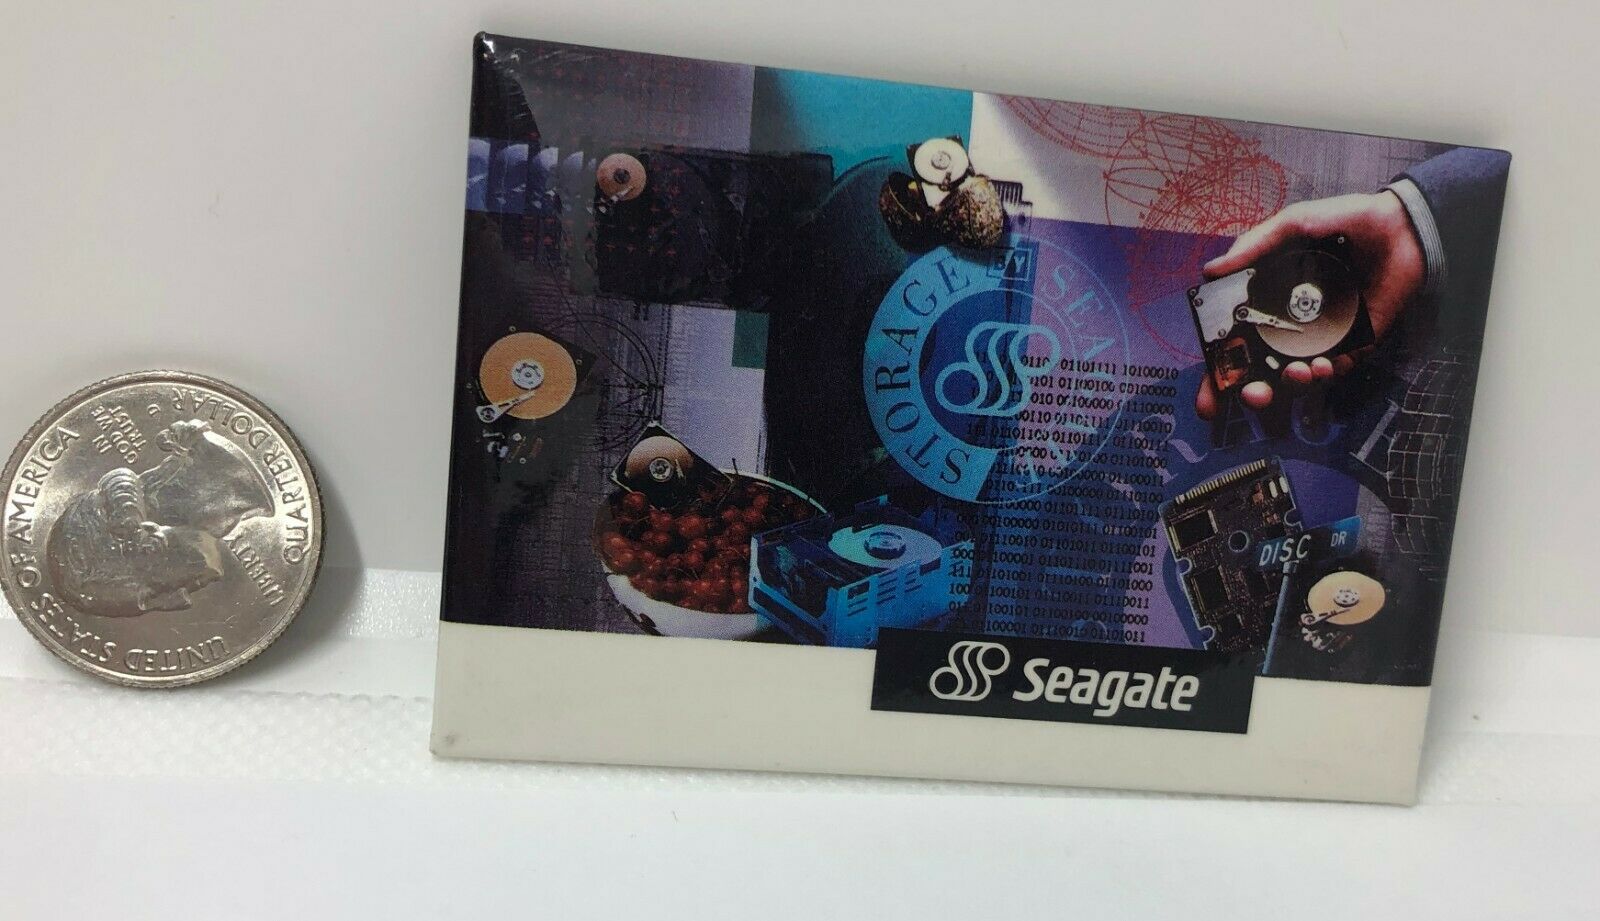 Seagate Advertising Pin